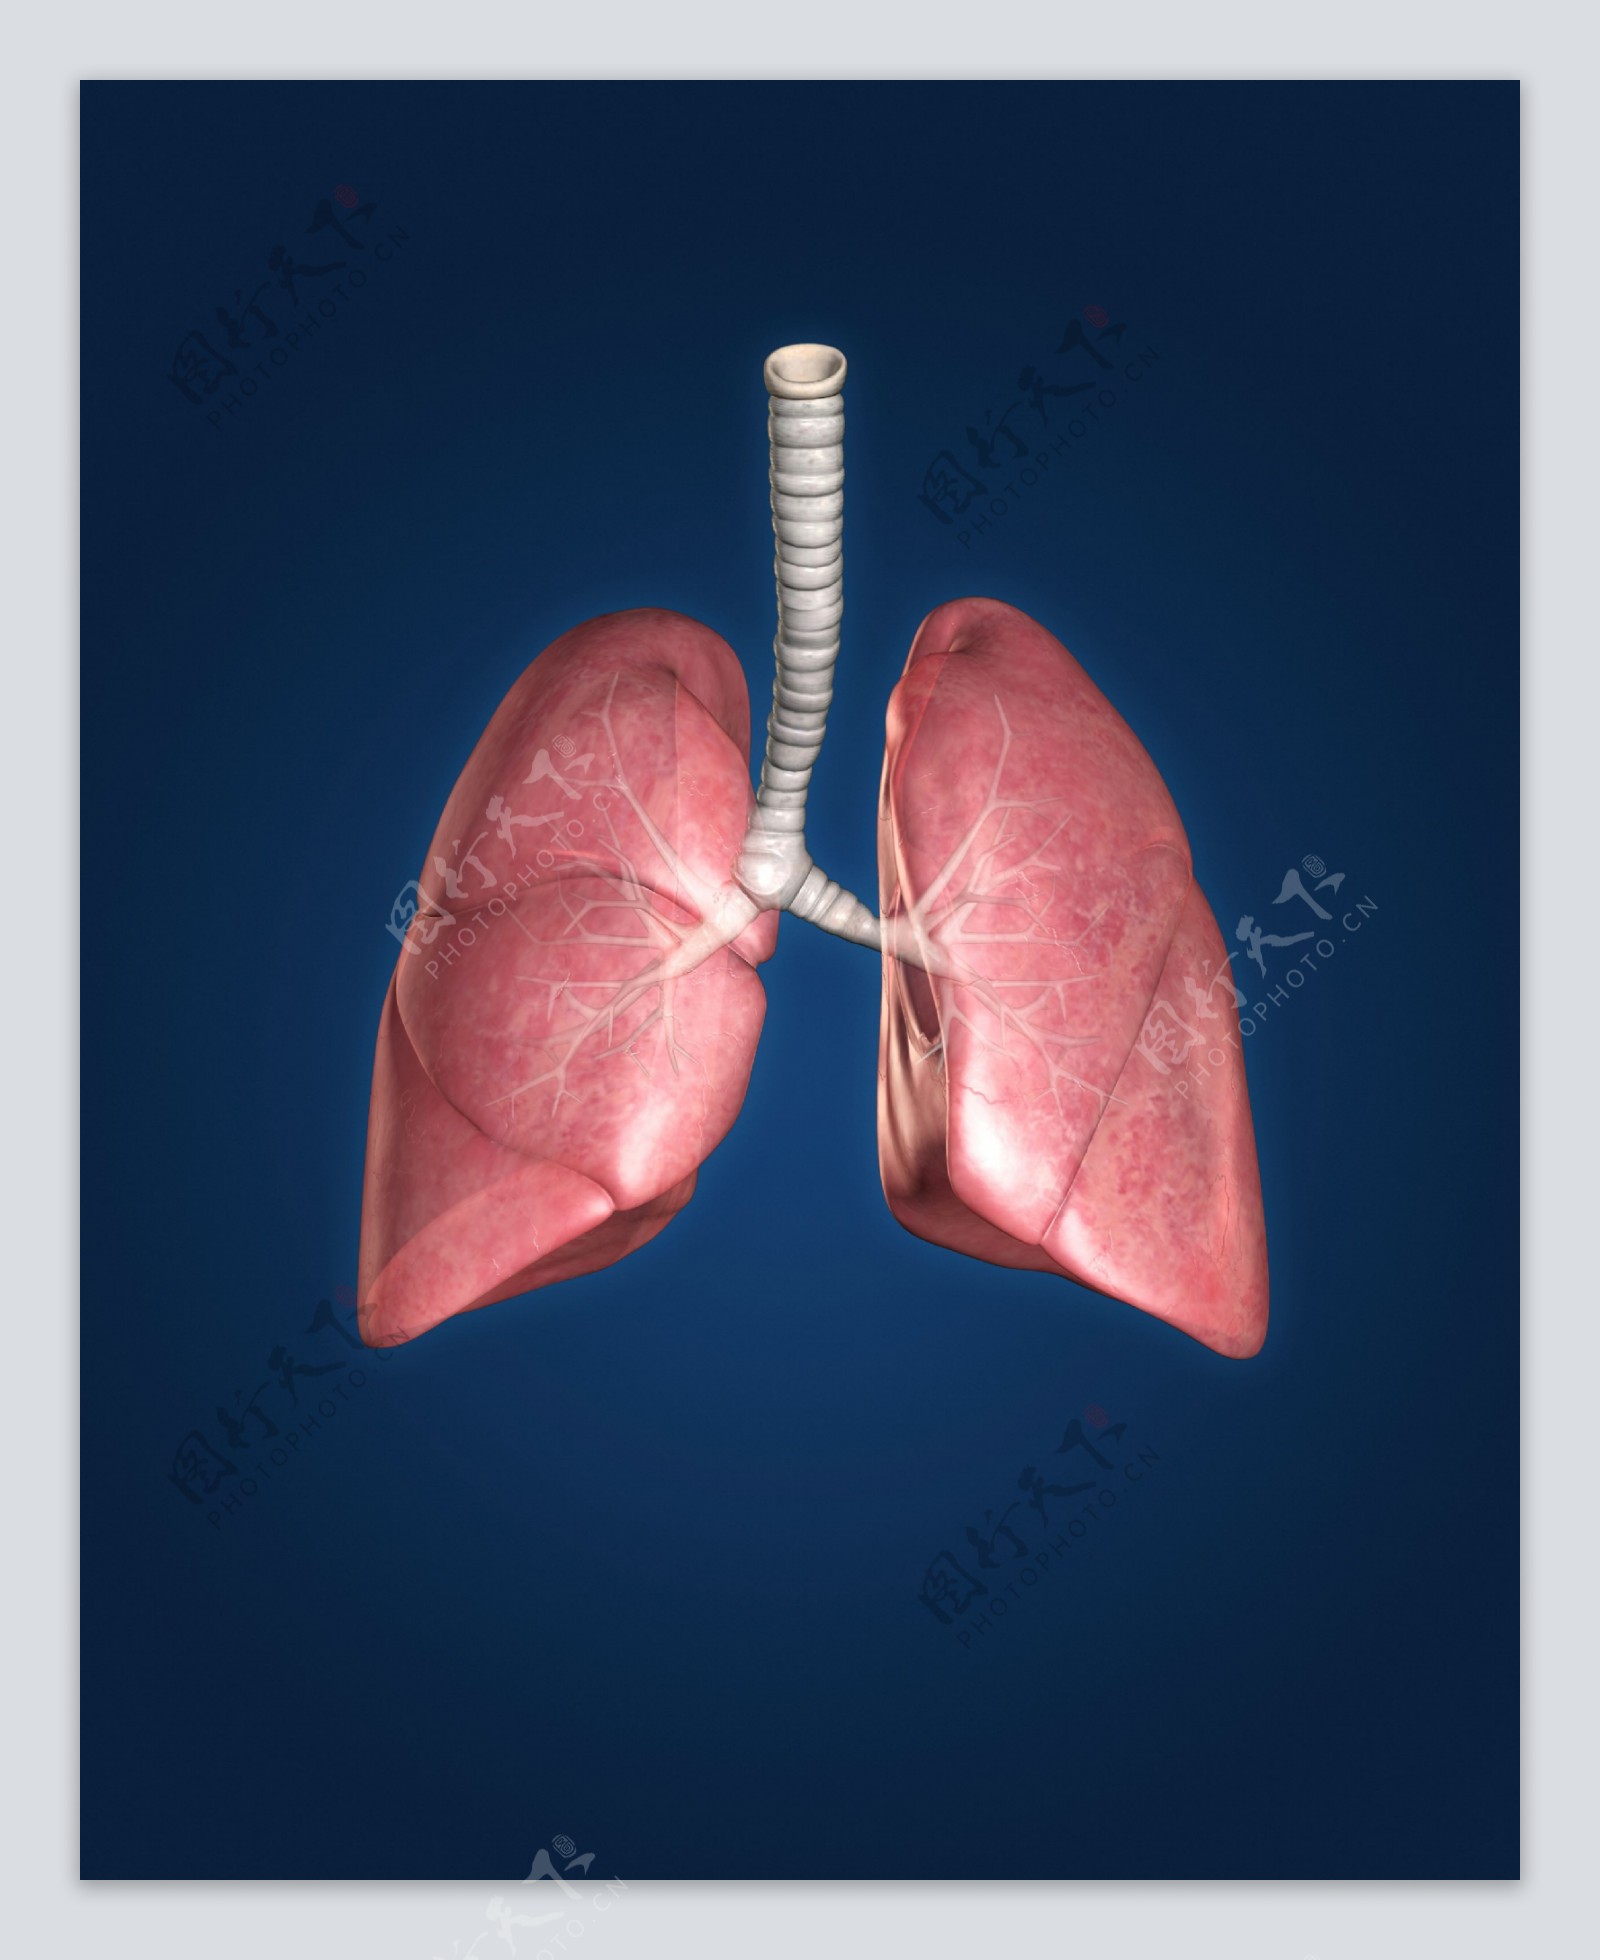 人体肺部器官图片